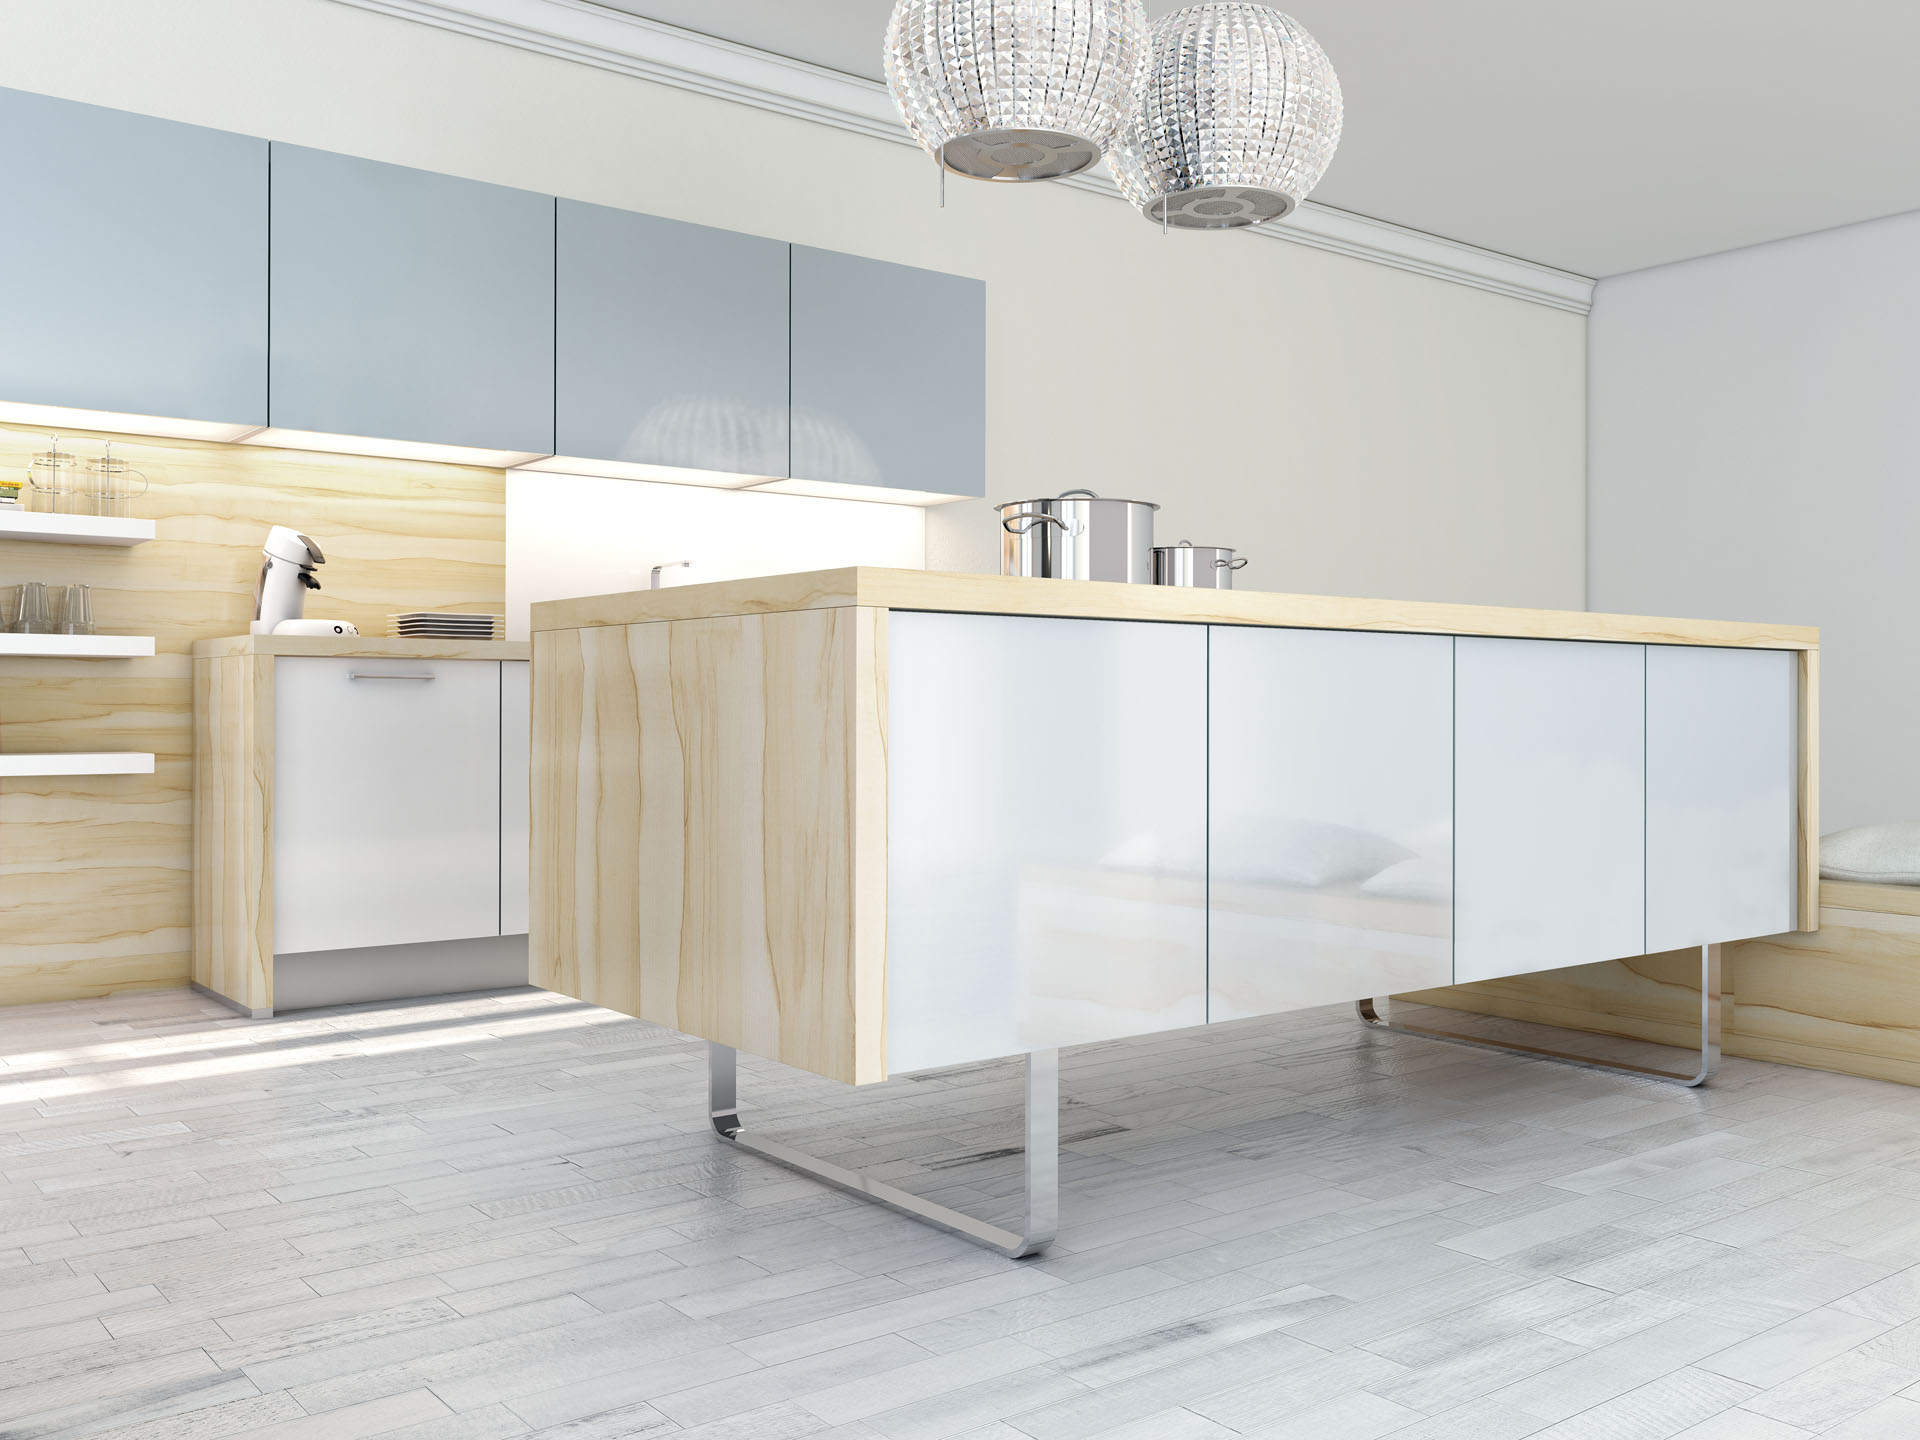 murray designs modern kitchens